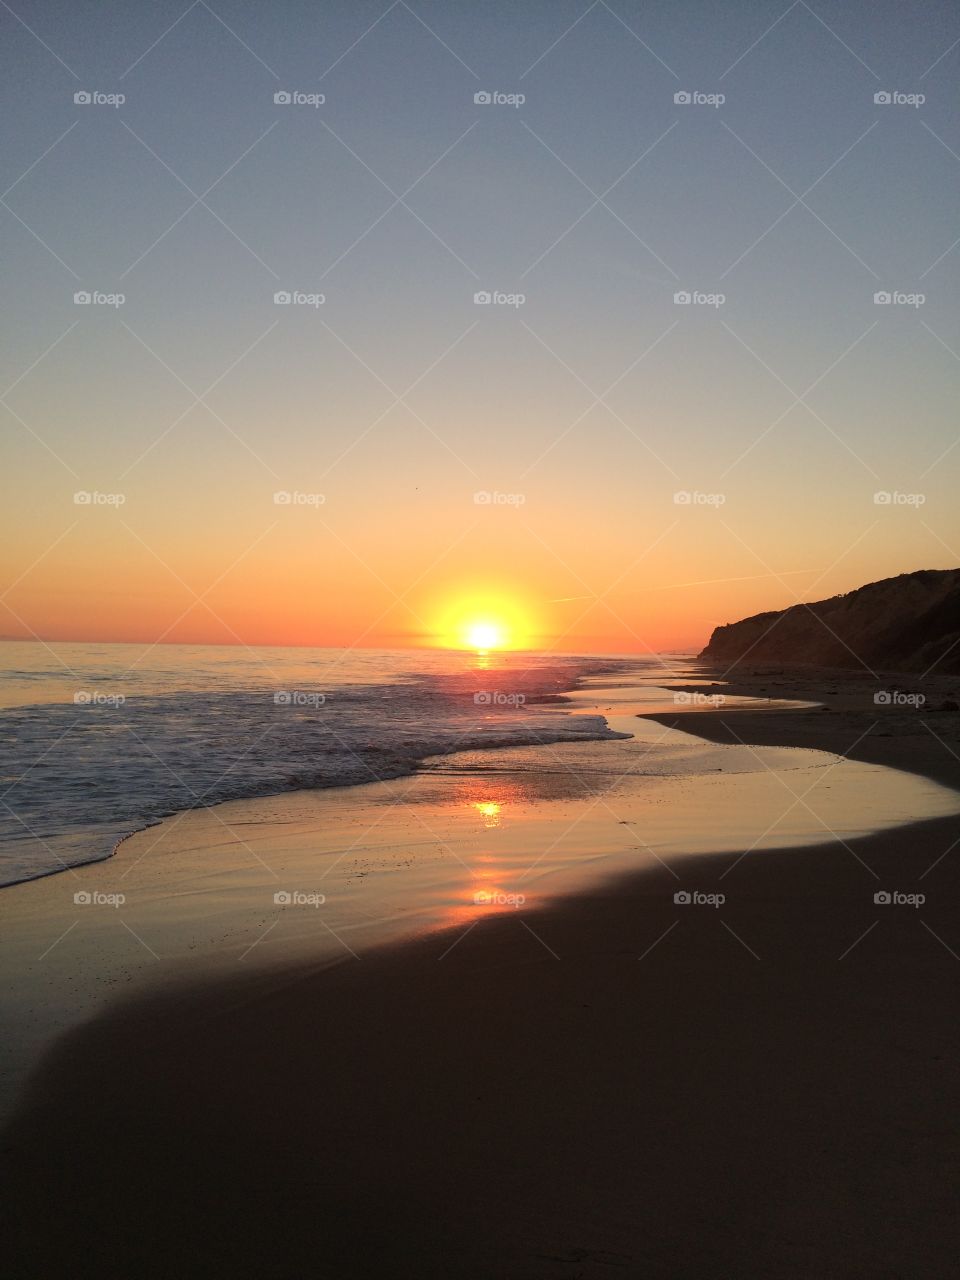 Sunset view of beach